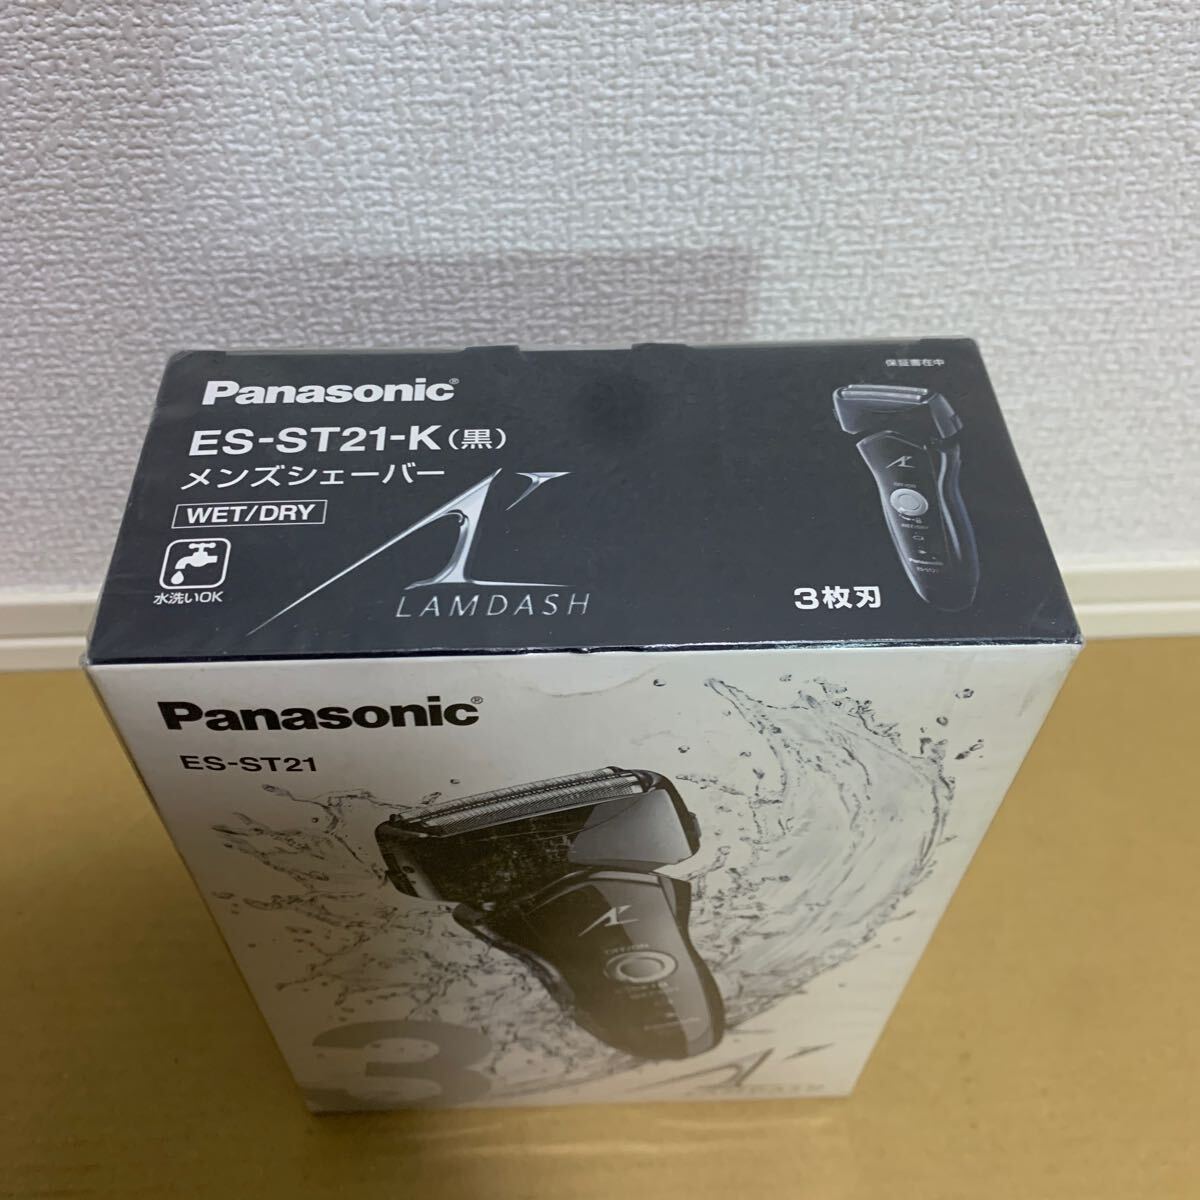 現状販売 未使用品 未開封 Panasonic パナソニック ES-ST21-K 黒 メンズシェーバー ラムダッシュ 3枚刃 WET/DRY 水洗いOK LAMDASHの画像3